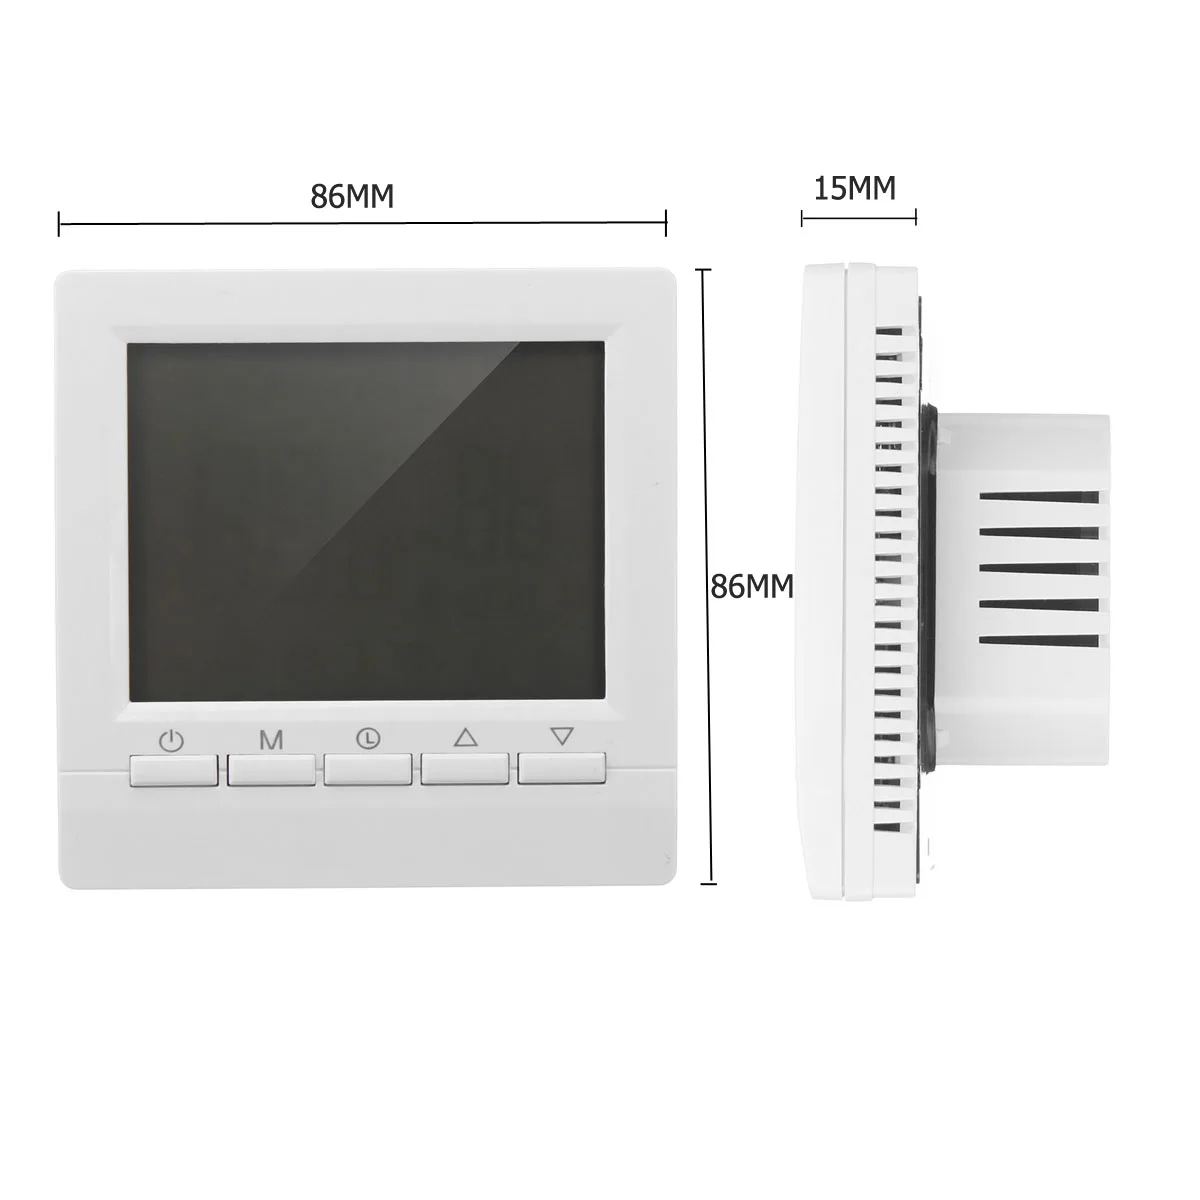 AC 220V Умный Цифровой Wi-Fi контроллер температуры нагрева воды сенсорный экран светодиодный дисплей комнатный термостат контроллер регулятор